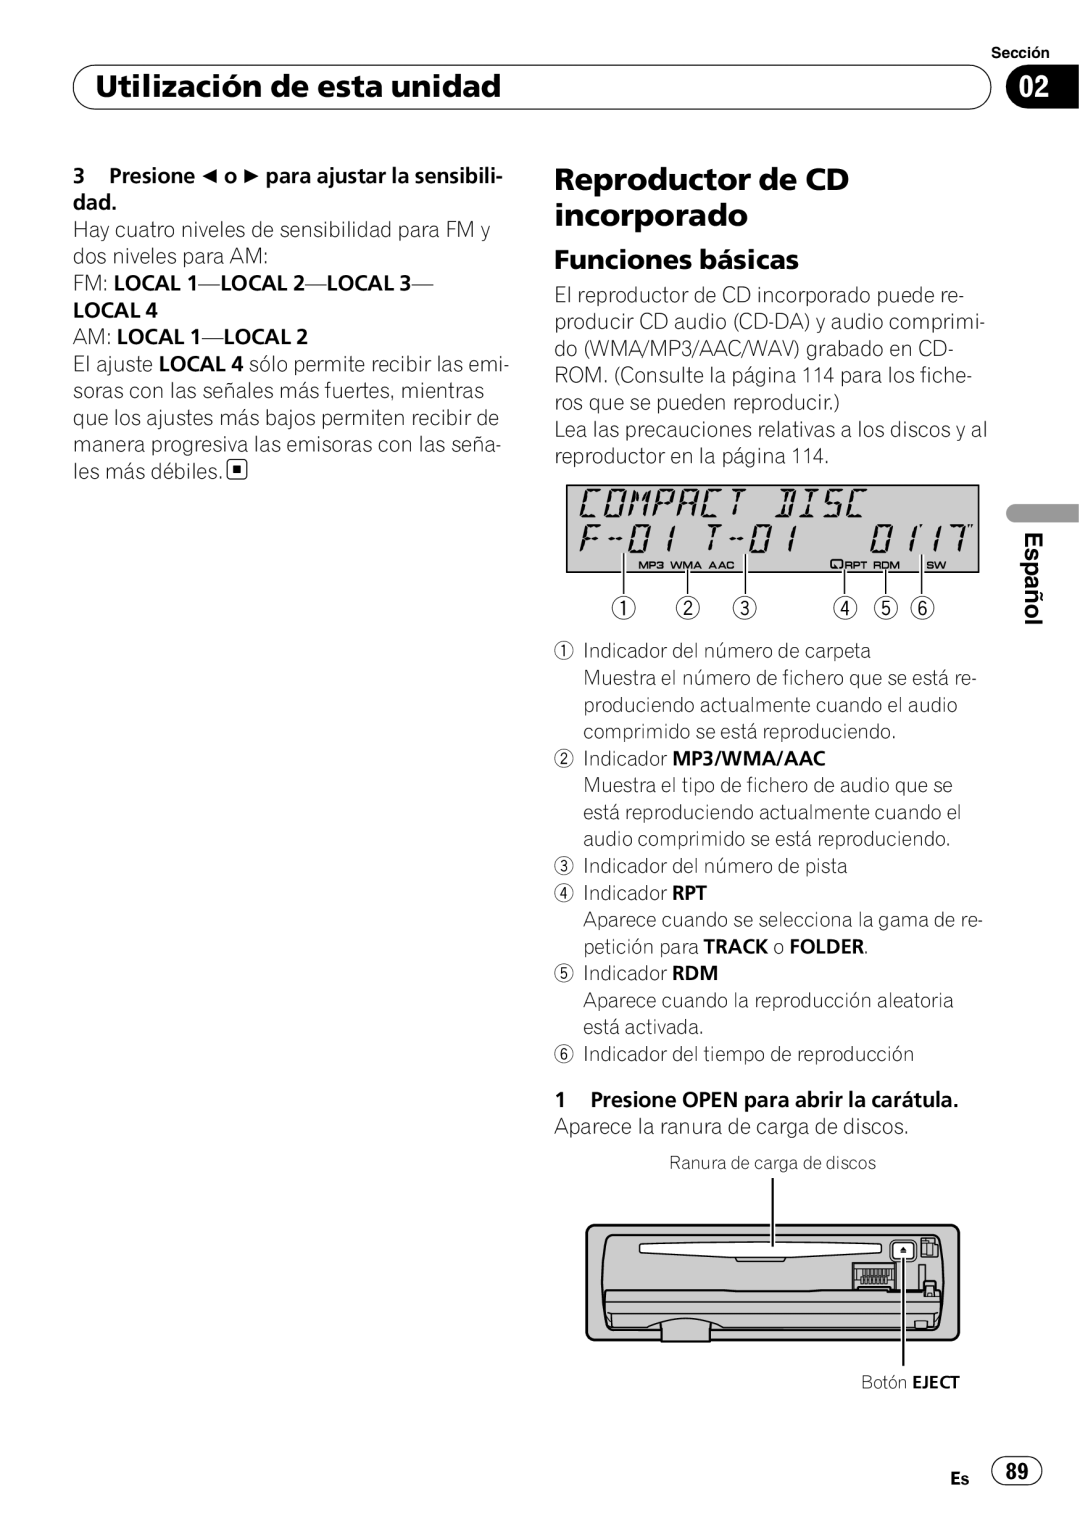 Pioneer SRC7127-B/N Reproductor de CD, incorporado, Utilización de esta unidad, Funciones básicas,   ,   , Español 